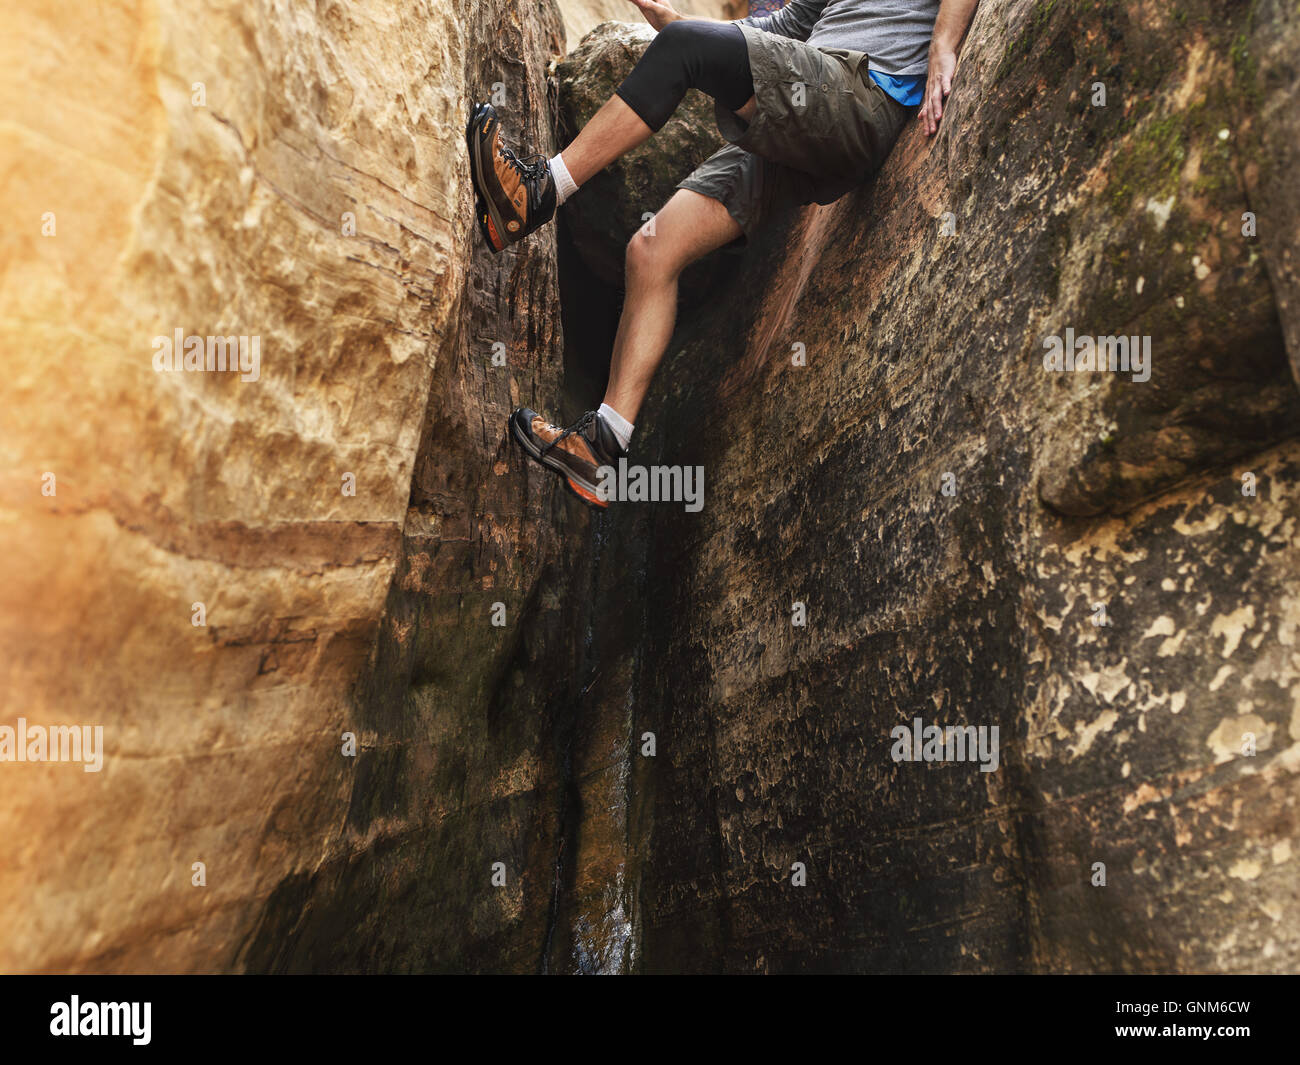 Un randonneur descend un slot canyon dans l'Utah Zion National Park Banque D'Images